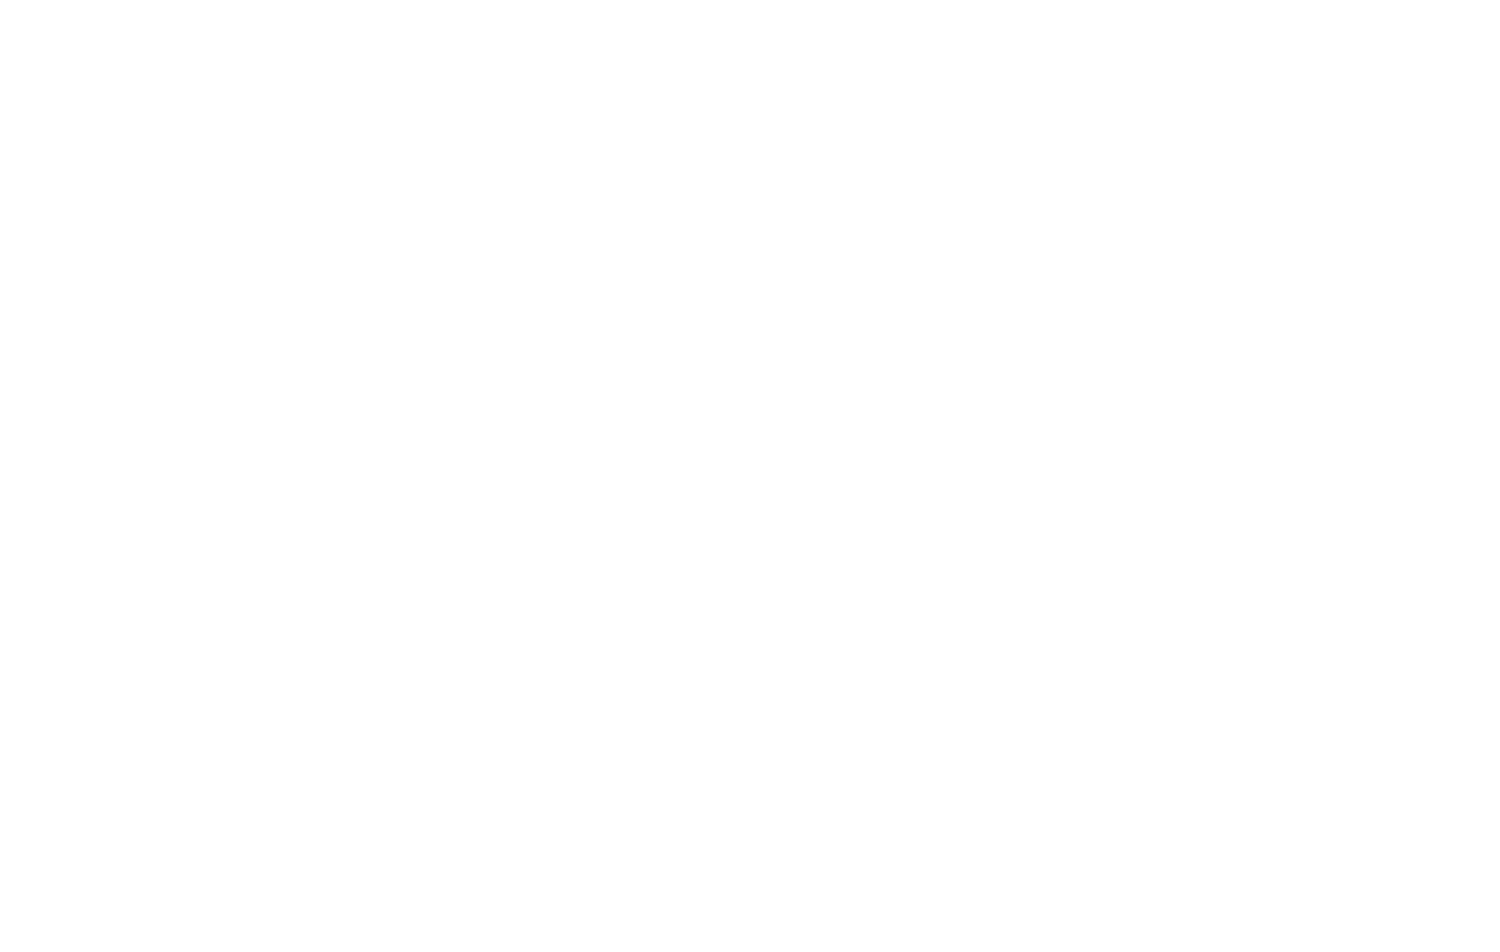 ADK FIRM | A Los Angeles litigation Boutique 